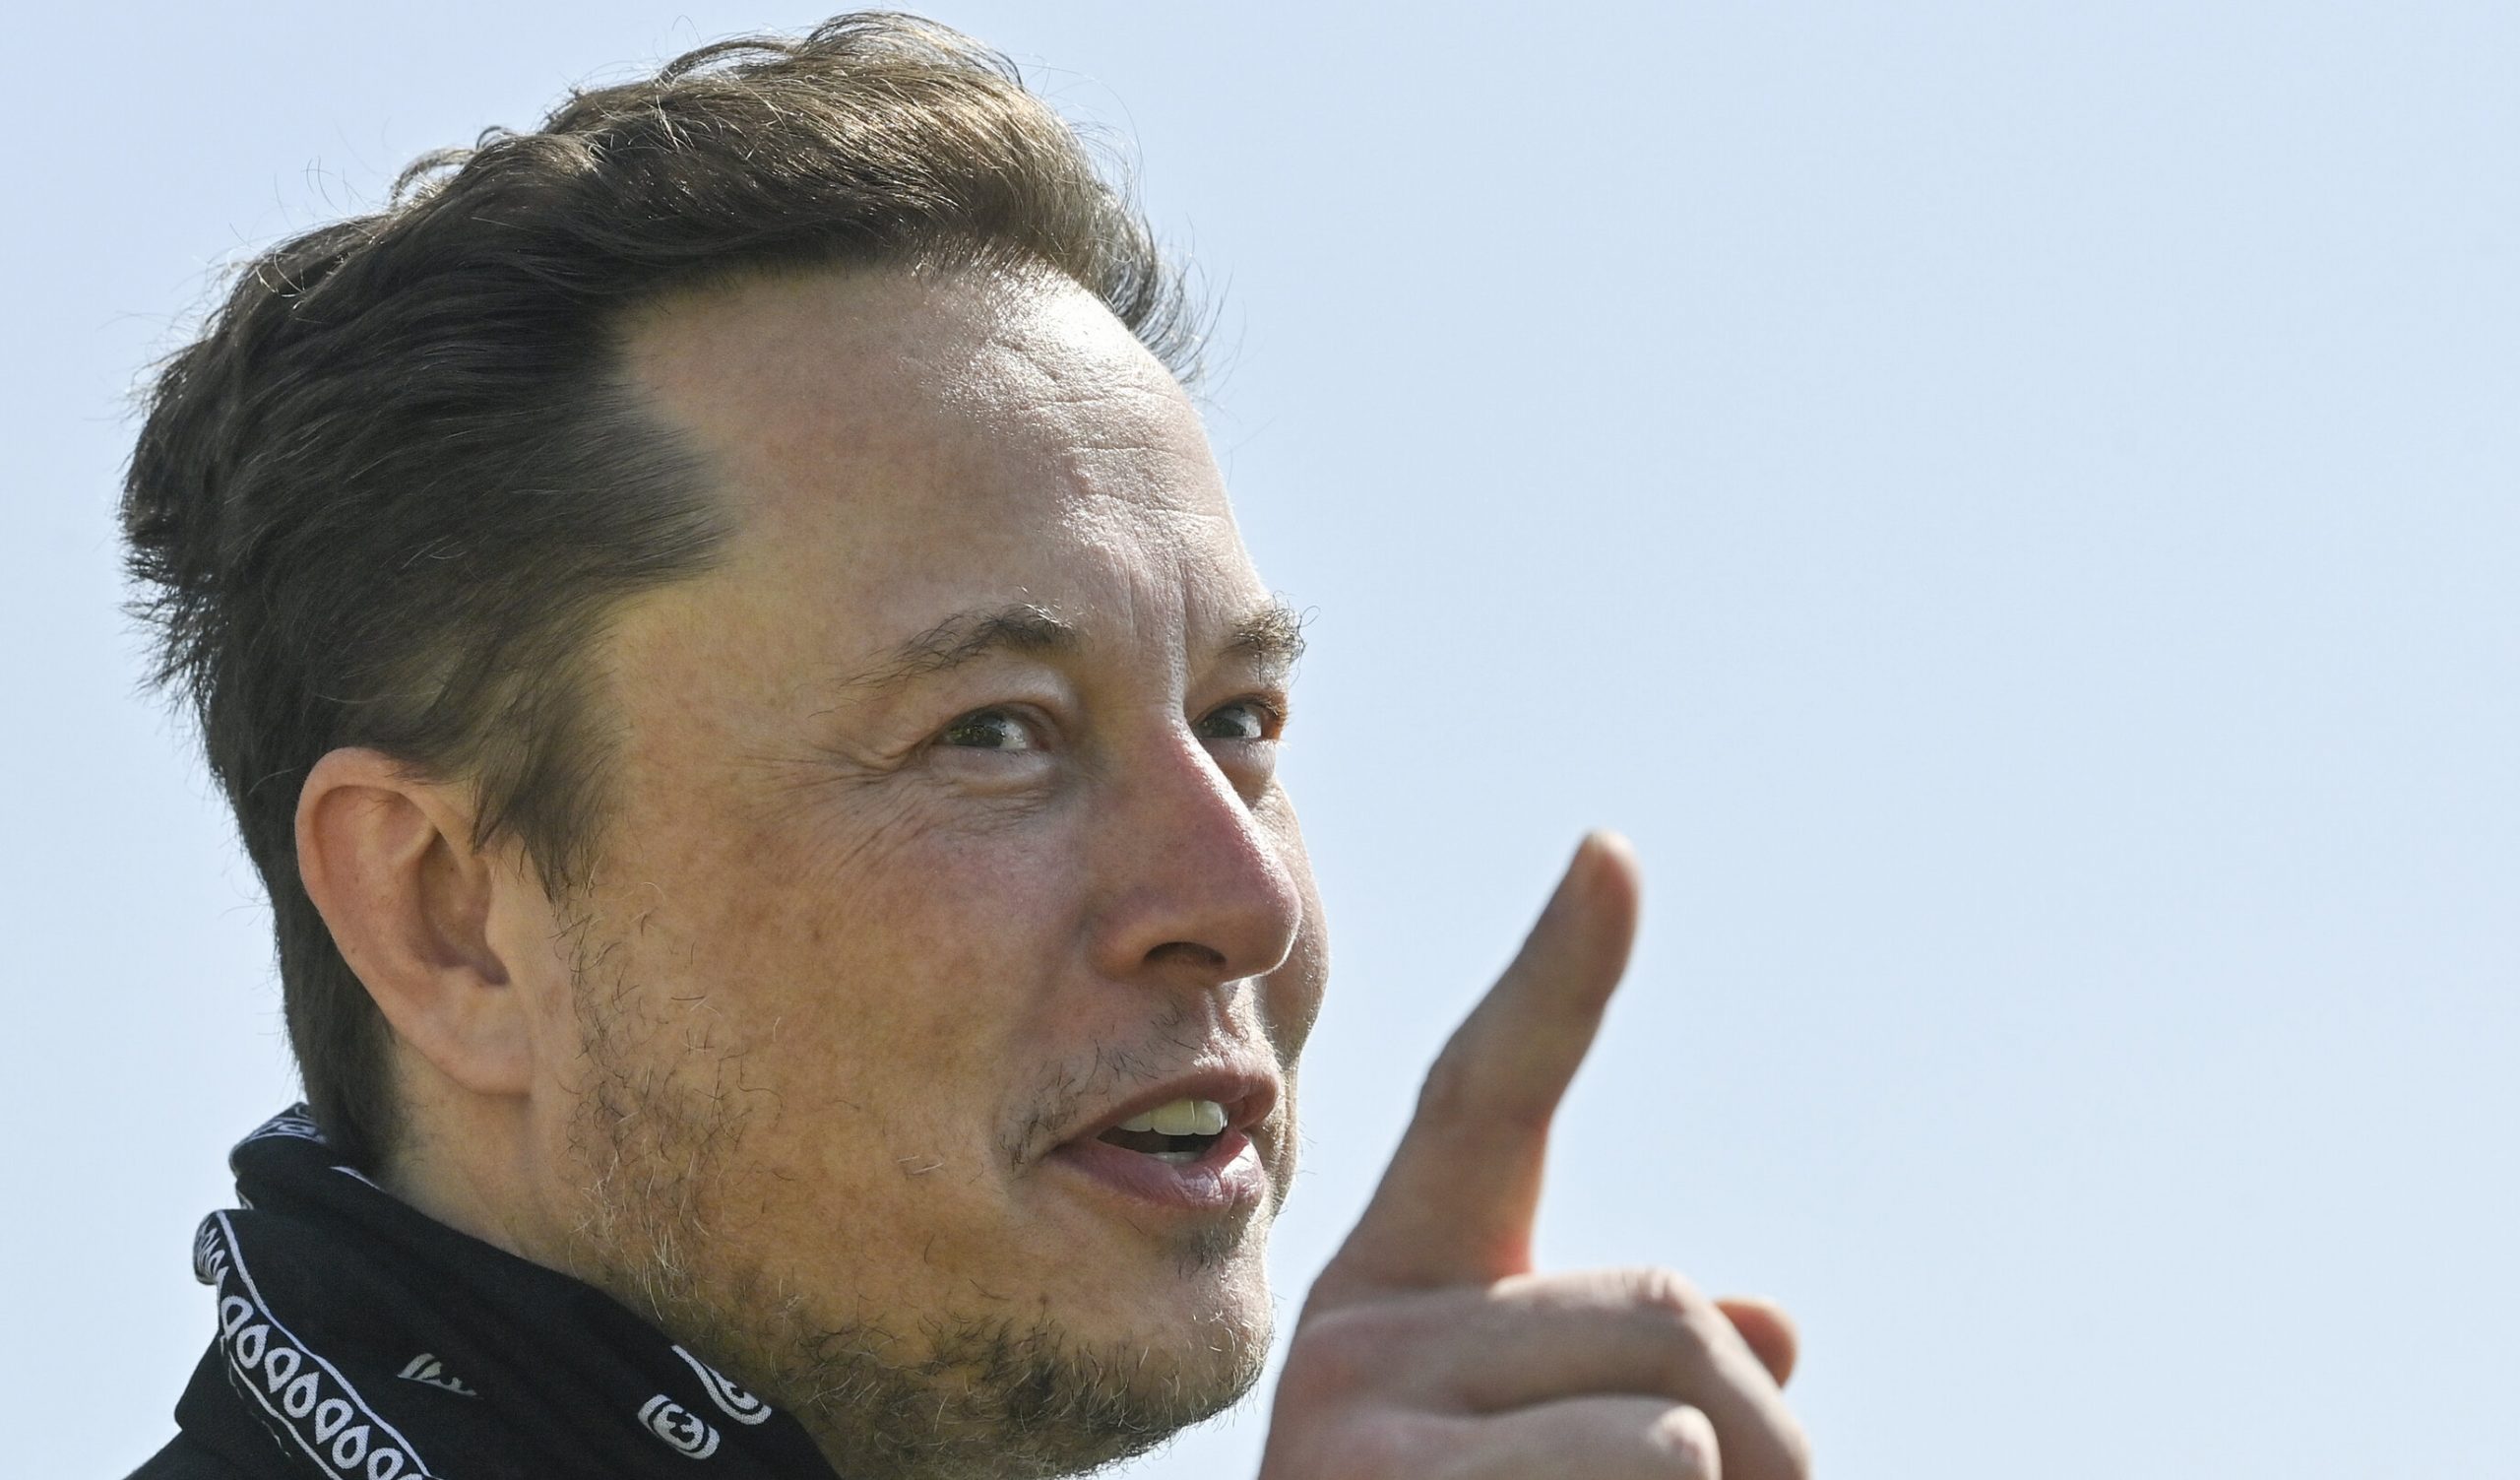 Elon Musk ar putea deveni primul om cu o avere mai mare de 1.000 de miliarde de dolari datorită SpaceX, spun analiștii Morgan Stanley